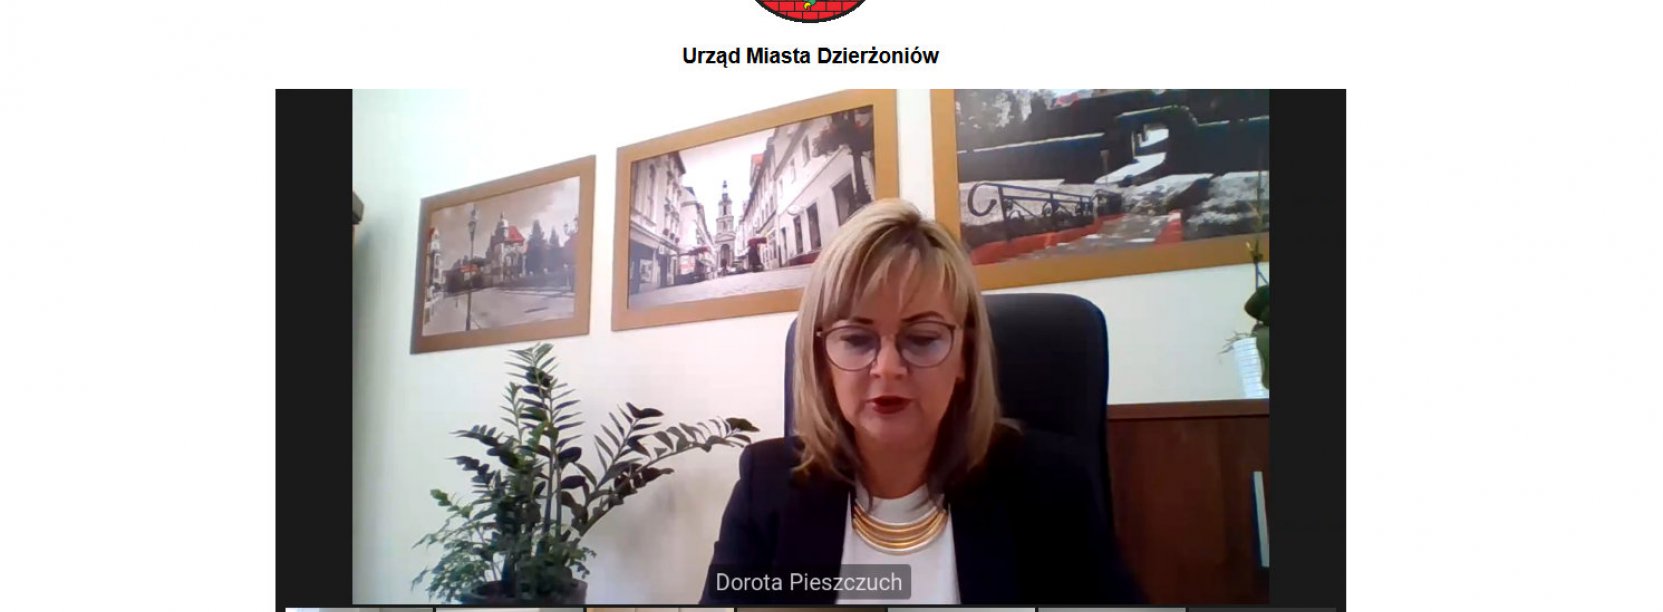 Widok na ekran z transmisją sesji, na głównym planie zastępca burmistrza Dorota Pieszczuch 